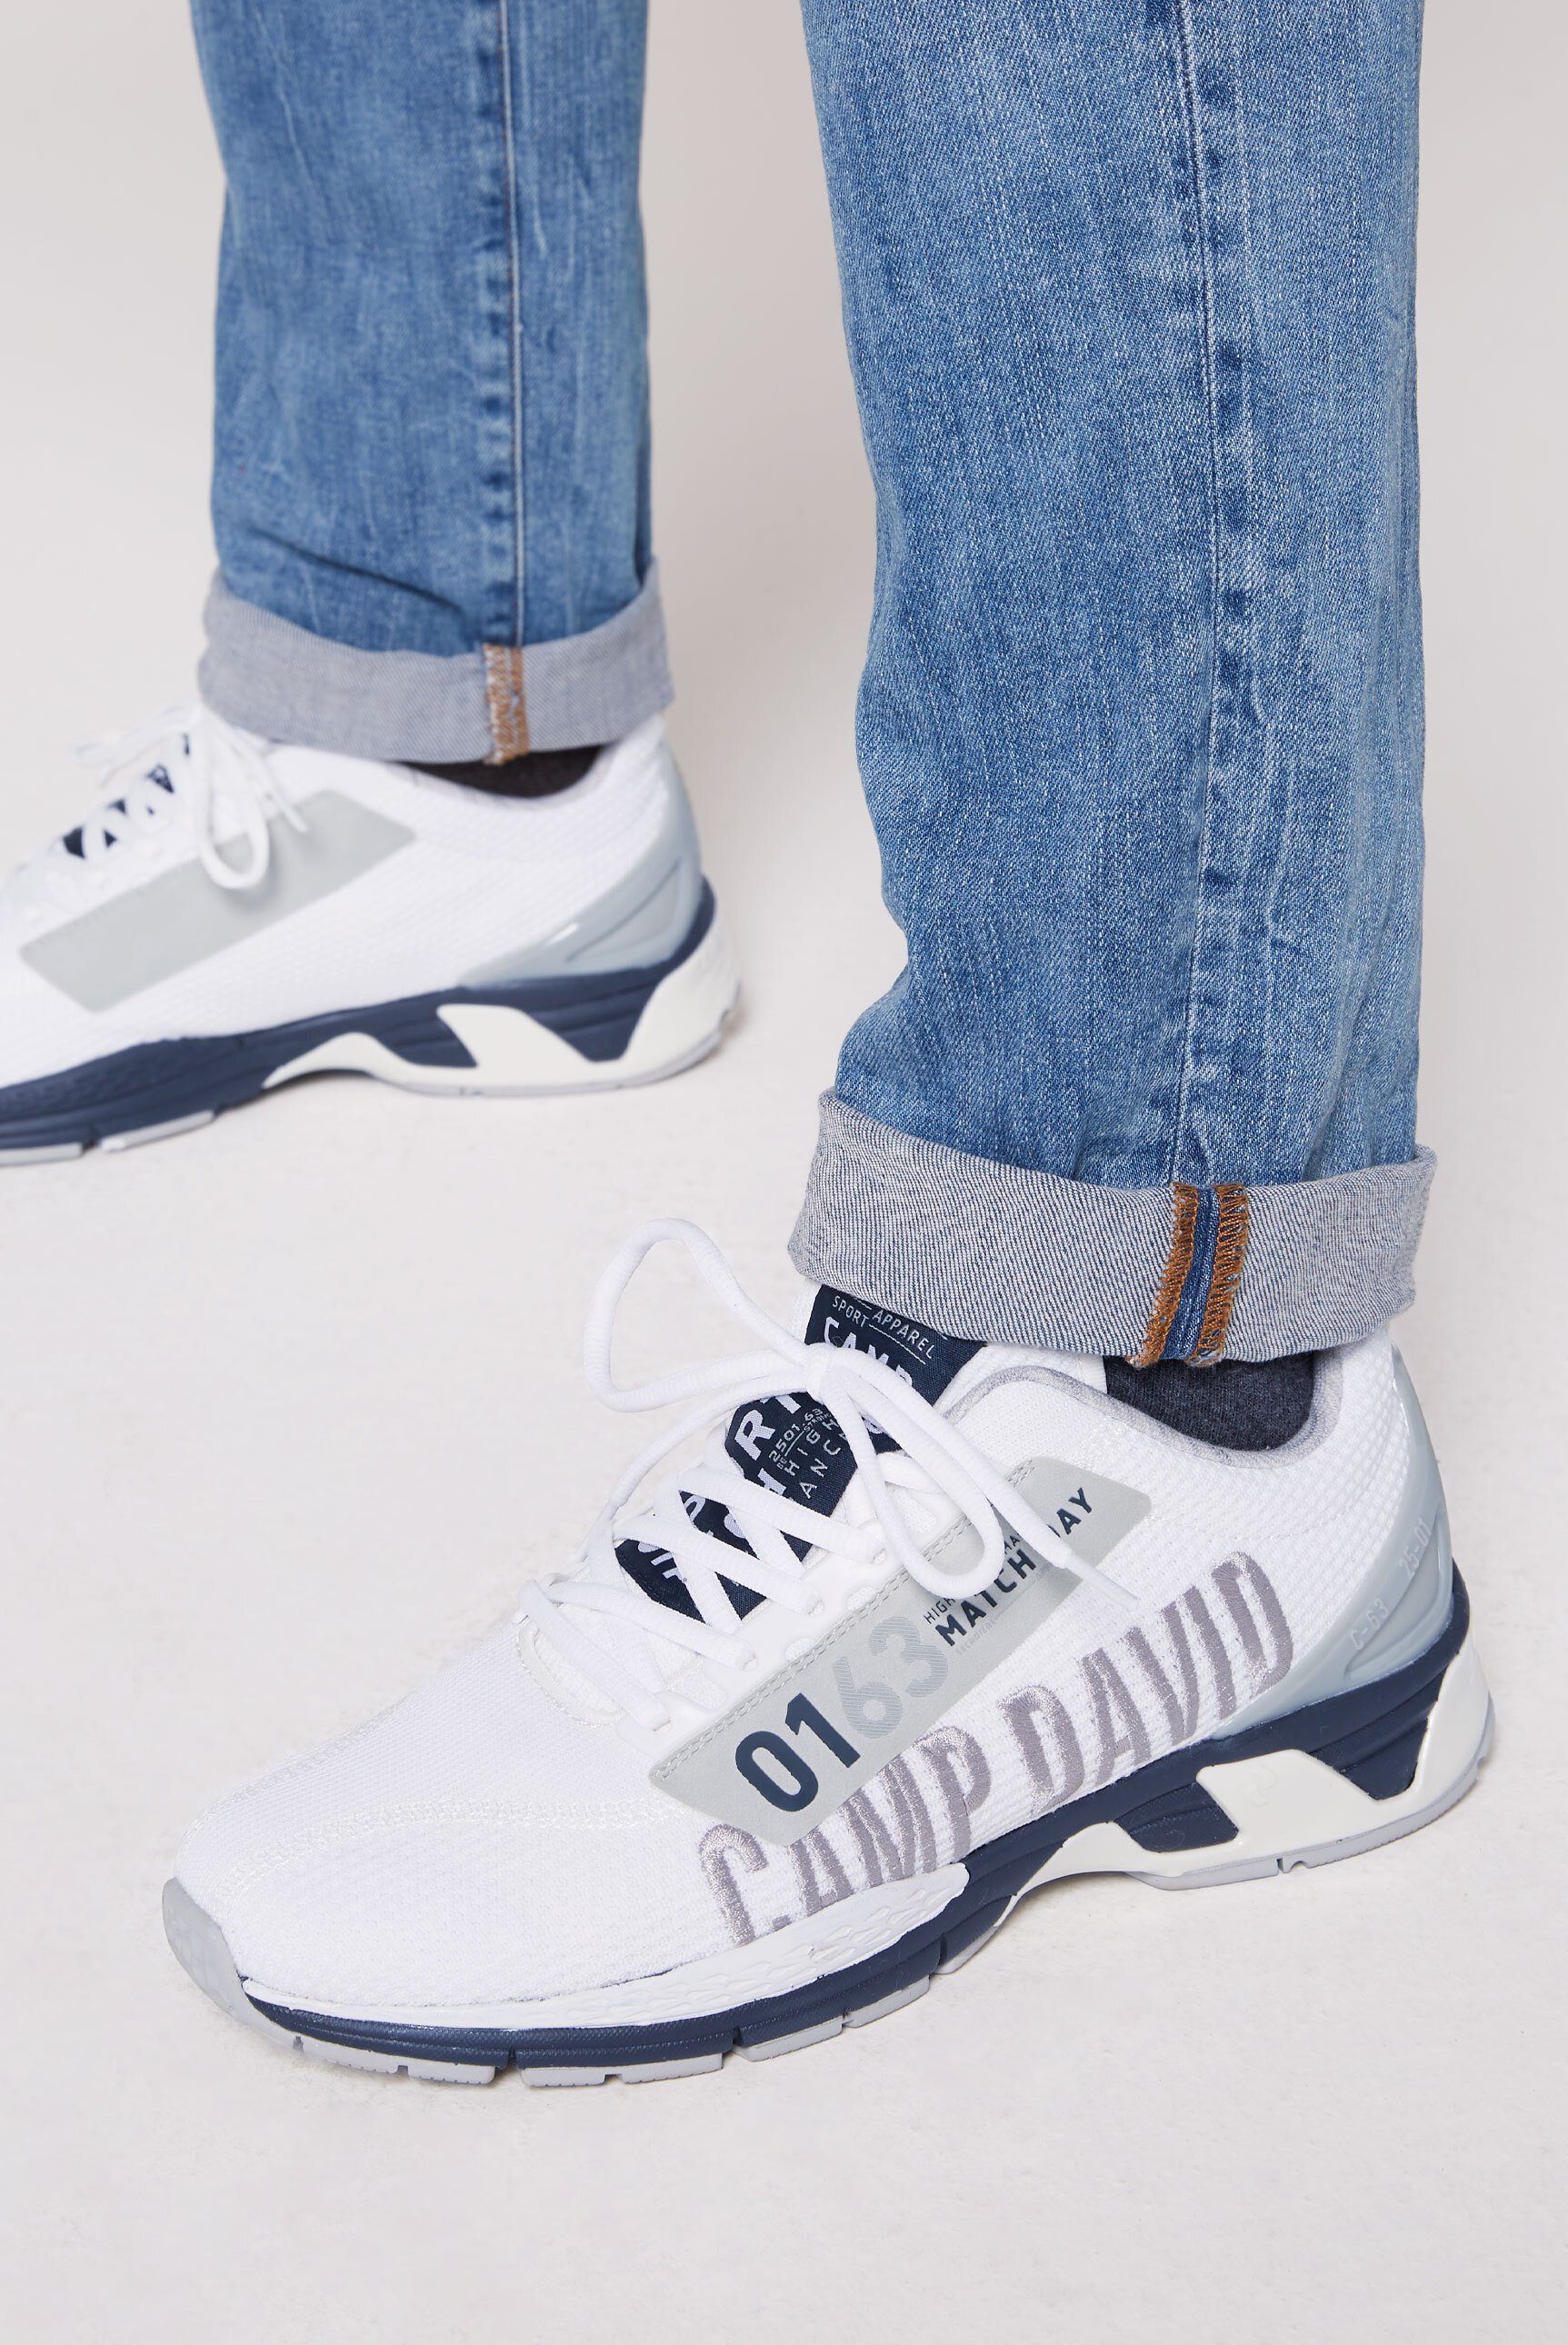 CAMP DAVID Sneaker mit Wechselfußbett, 10-Loch-Schnürung online kaufen |  OTTO